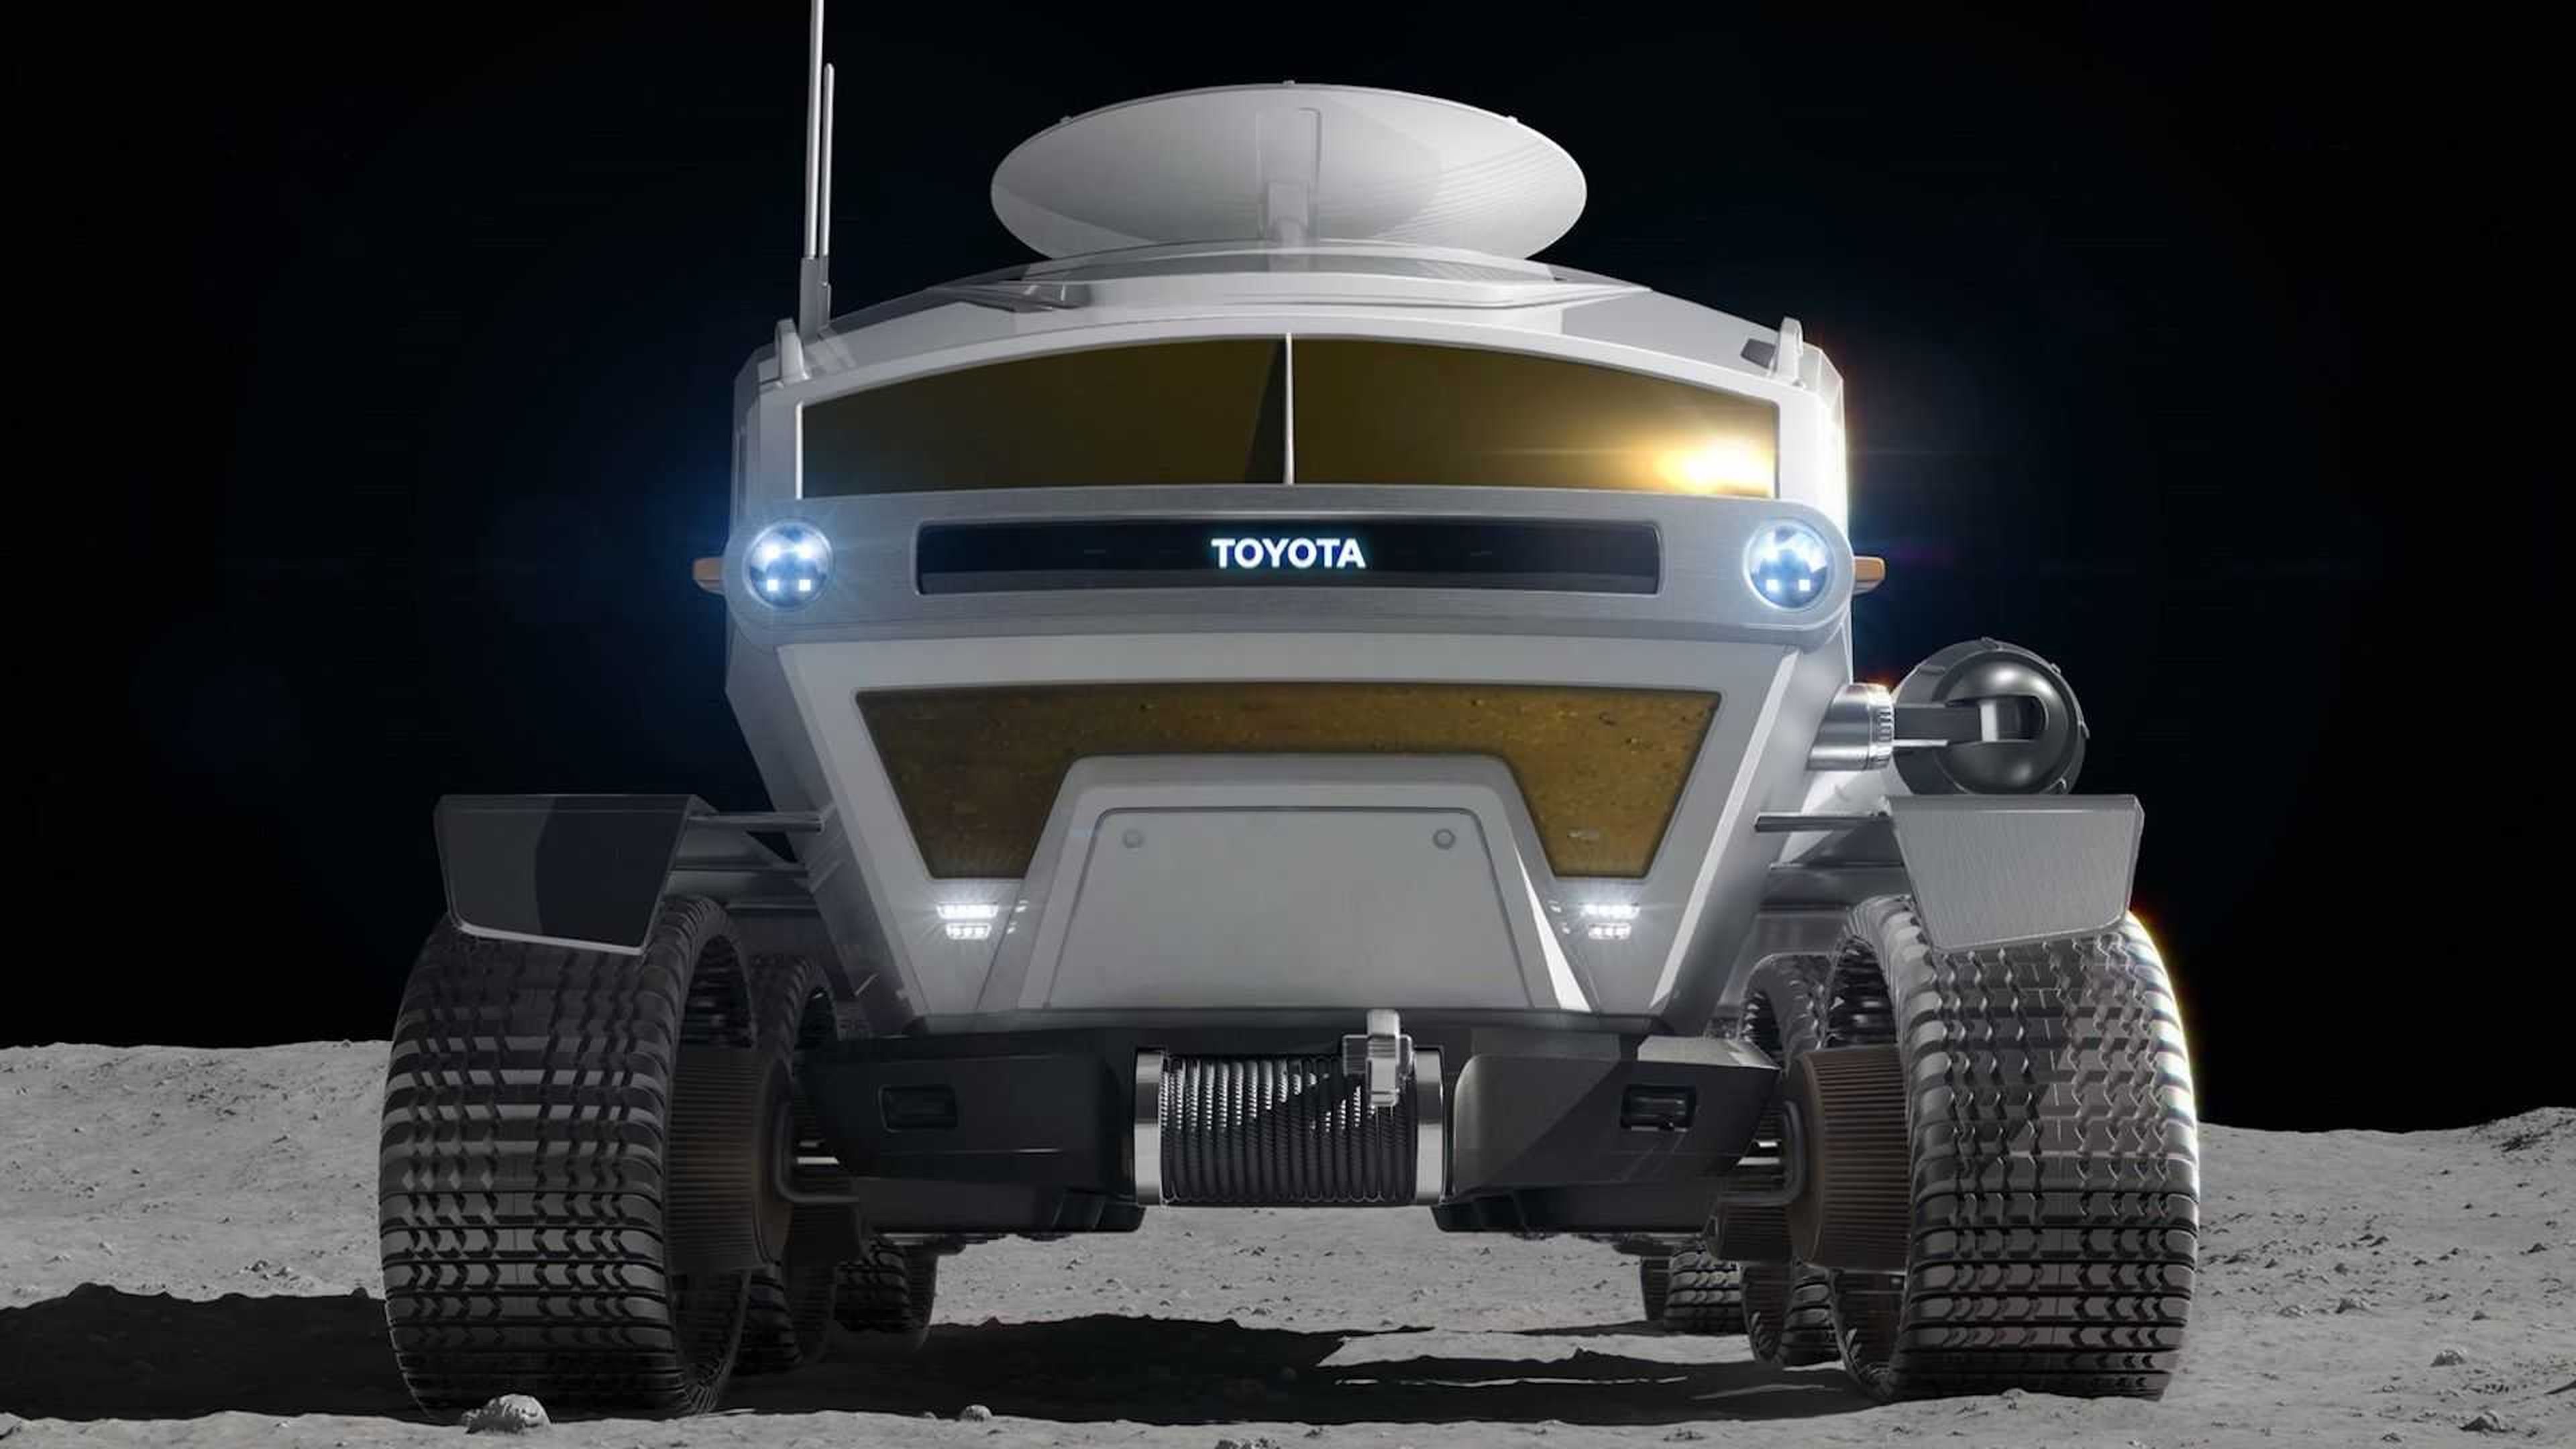 Toyota presenta el primer vehículo lunar tripulado, el Lunar Cruiser, con una autonomía de 10.000 Km